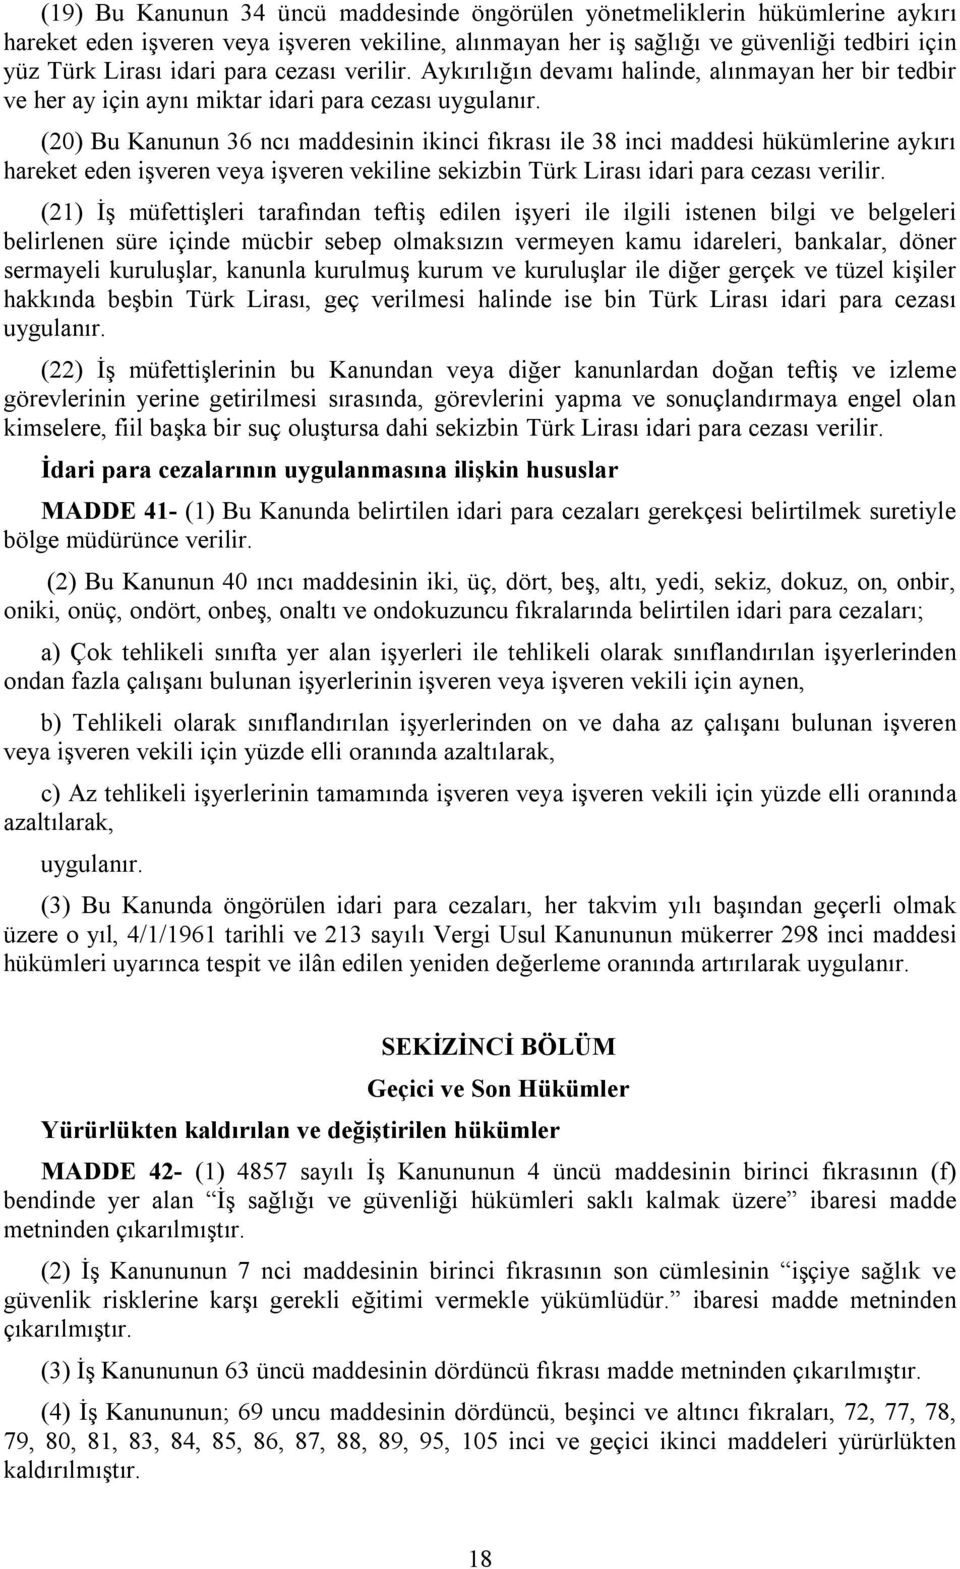 (20) Bu Kanunun 36 ncı maddesinin ikinci fıkrası ile 38 inci maddesi hükümlerine aykırı hareket eden işveren veya işveren vekiline sekizbin Türk Lirası idari para cezası verilir.